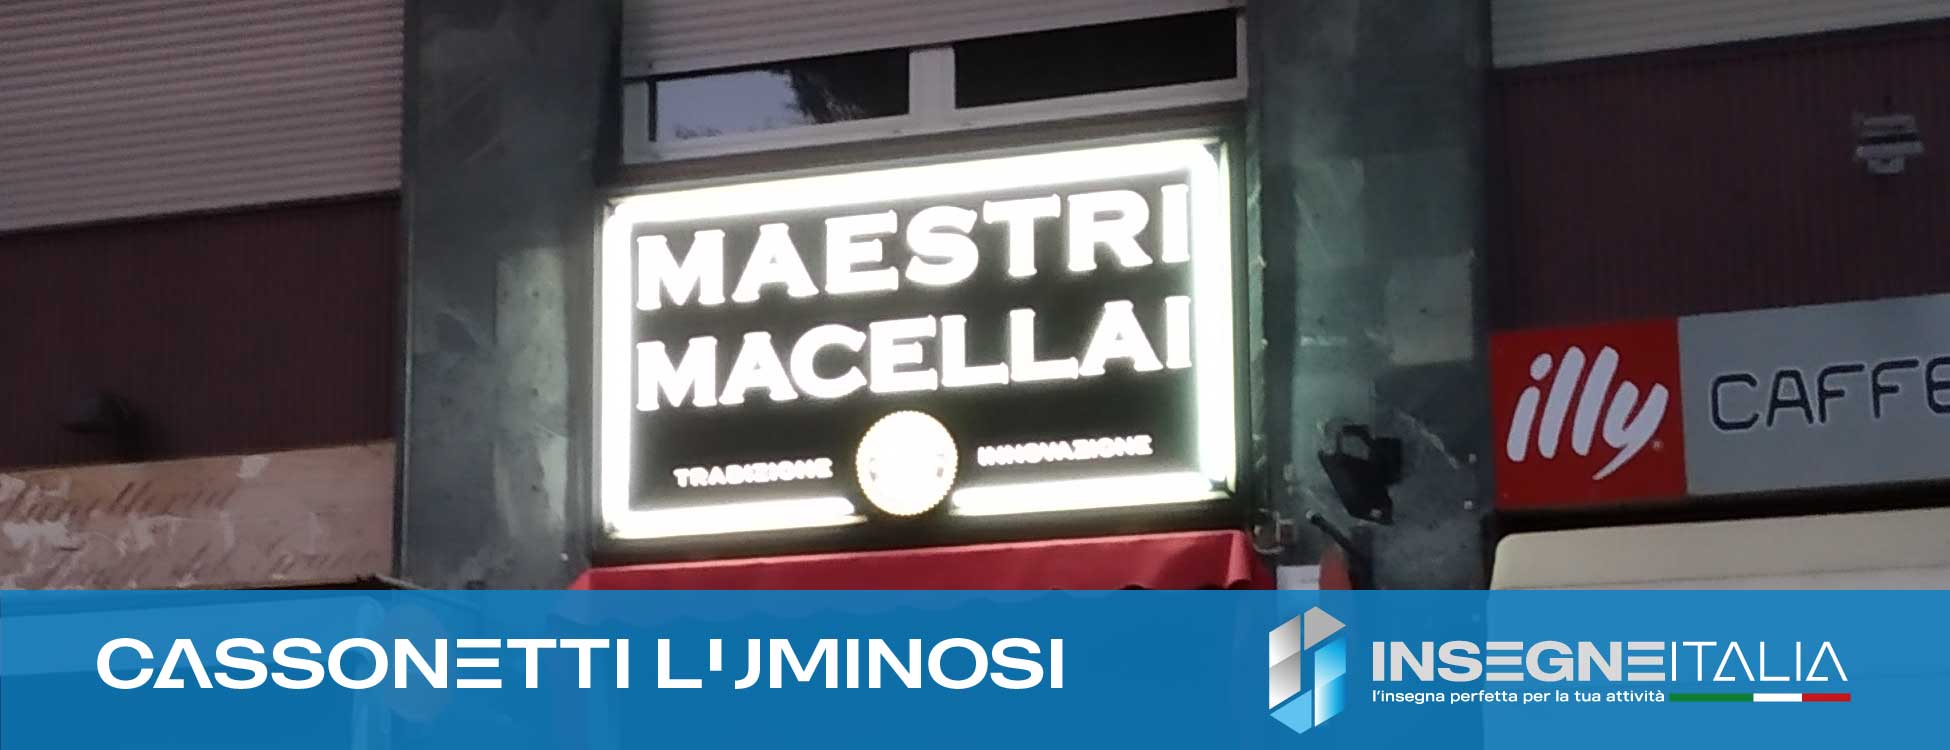 Insegna a cassonetto luminoso per macelleria "Maestri Macellai"